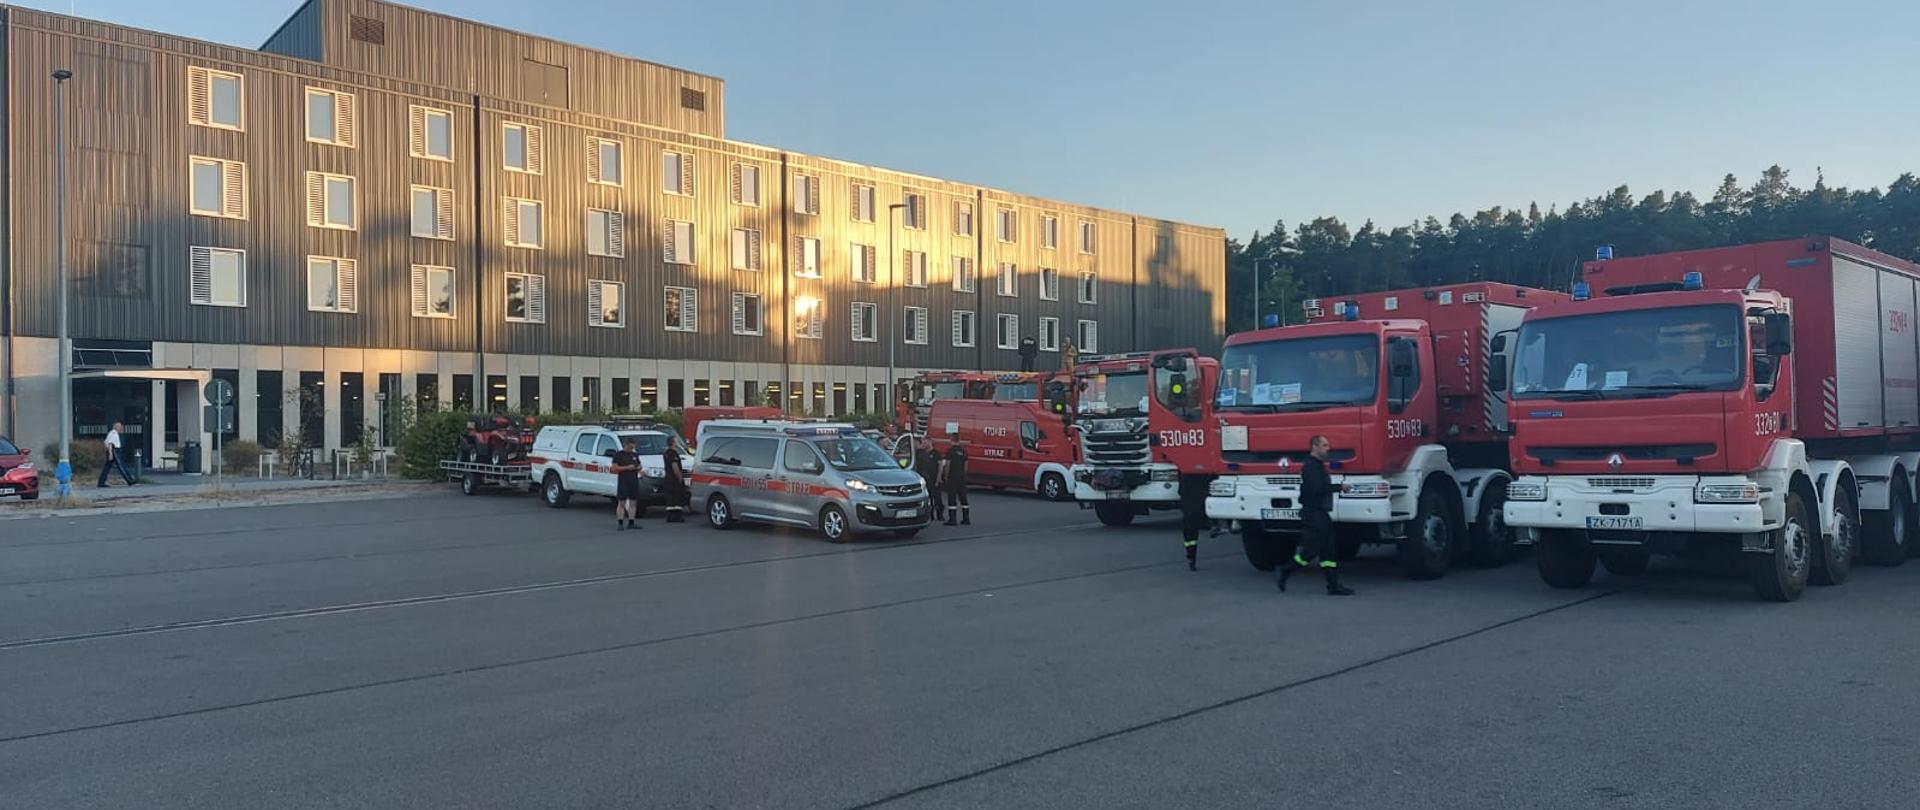 Ustawione w rzędzie samochody strażackie na tle budynku Straży Pożarnej we Francji